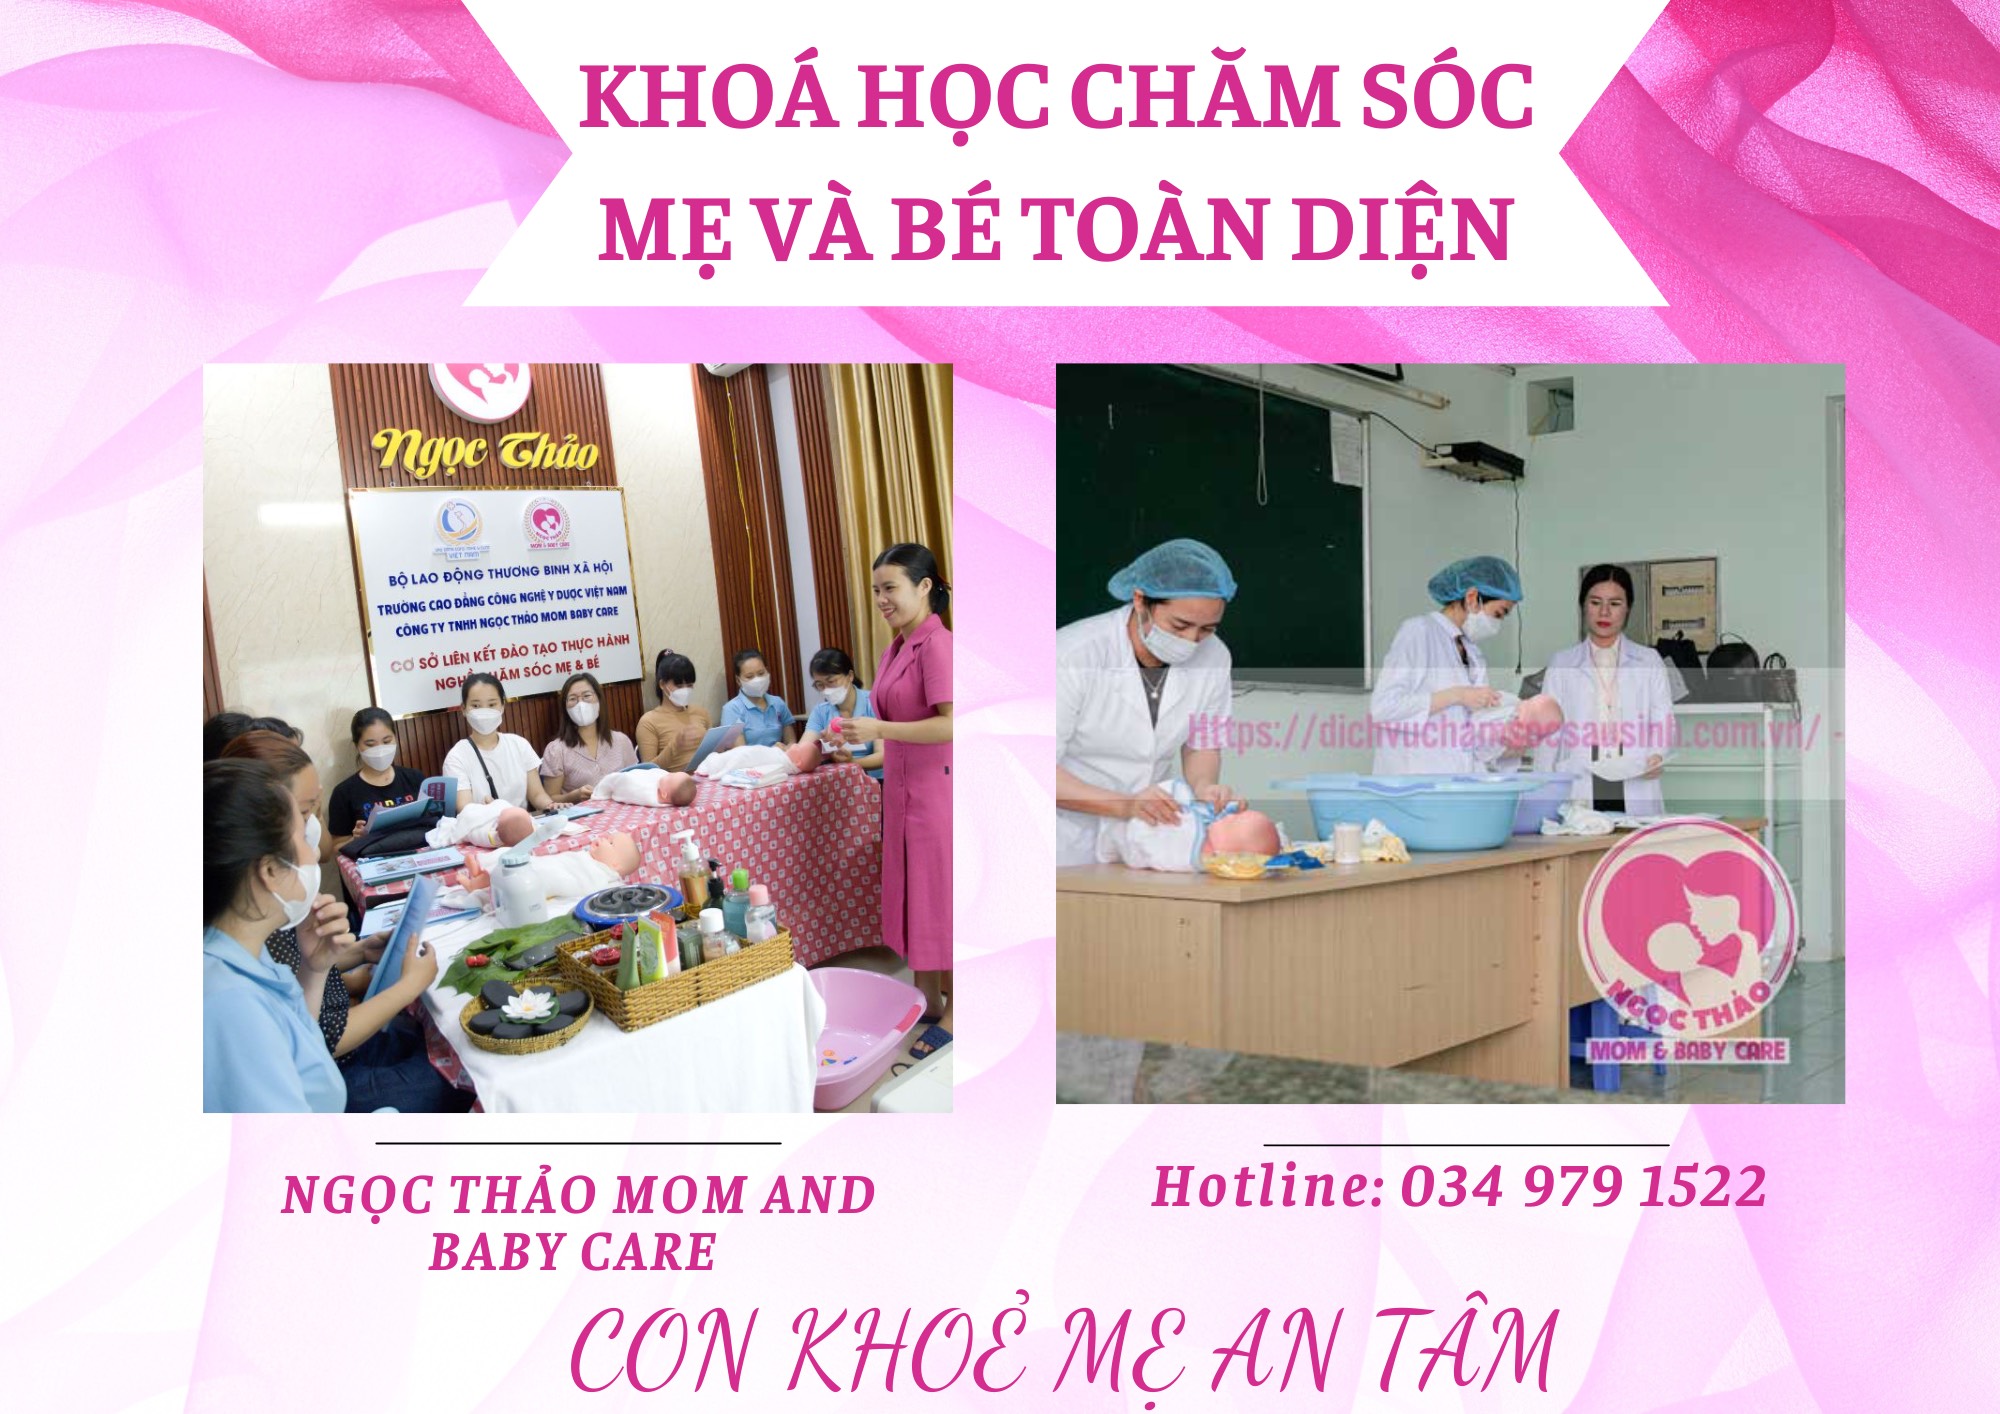 Khóa học chăm sóc mẹ và bé tại Hồ Chí Minh